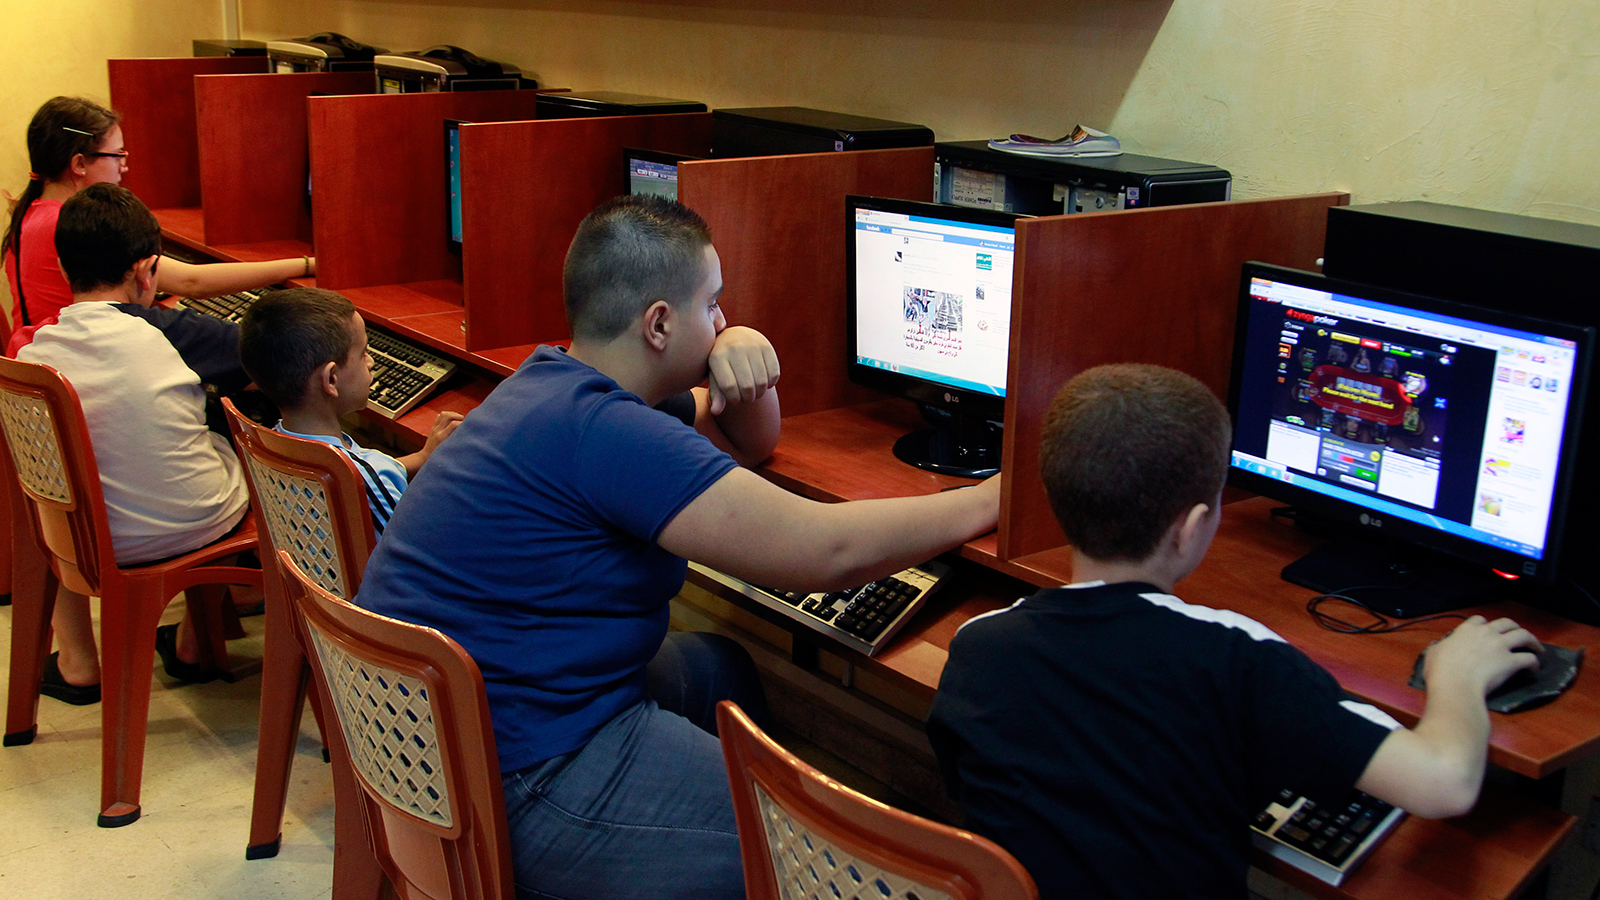 ‪أطفال داخل أحد مقاهي الإنترنت في العاصمة اللبنانية بيروت‬ (الأوروبية)